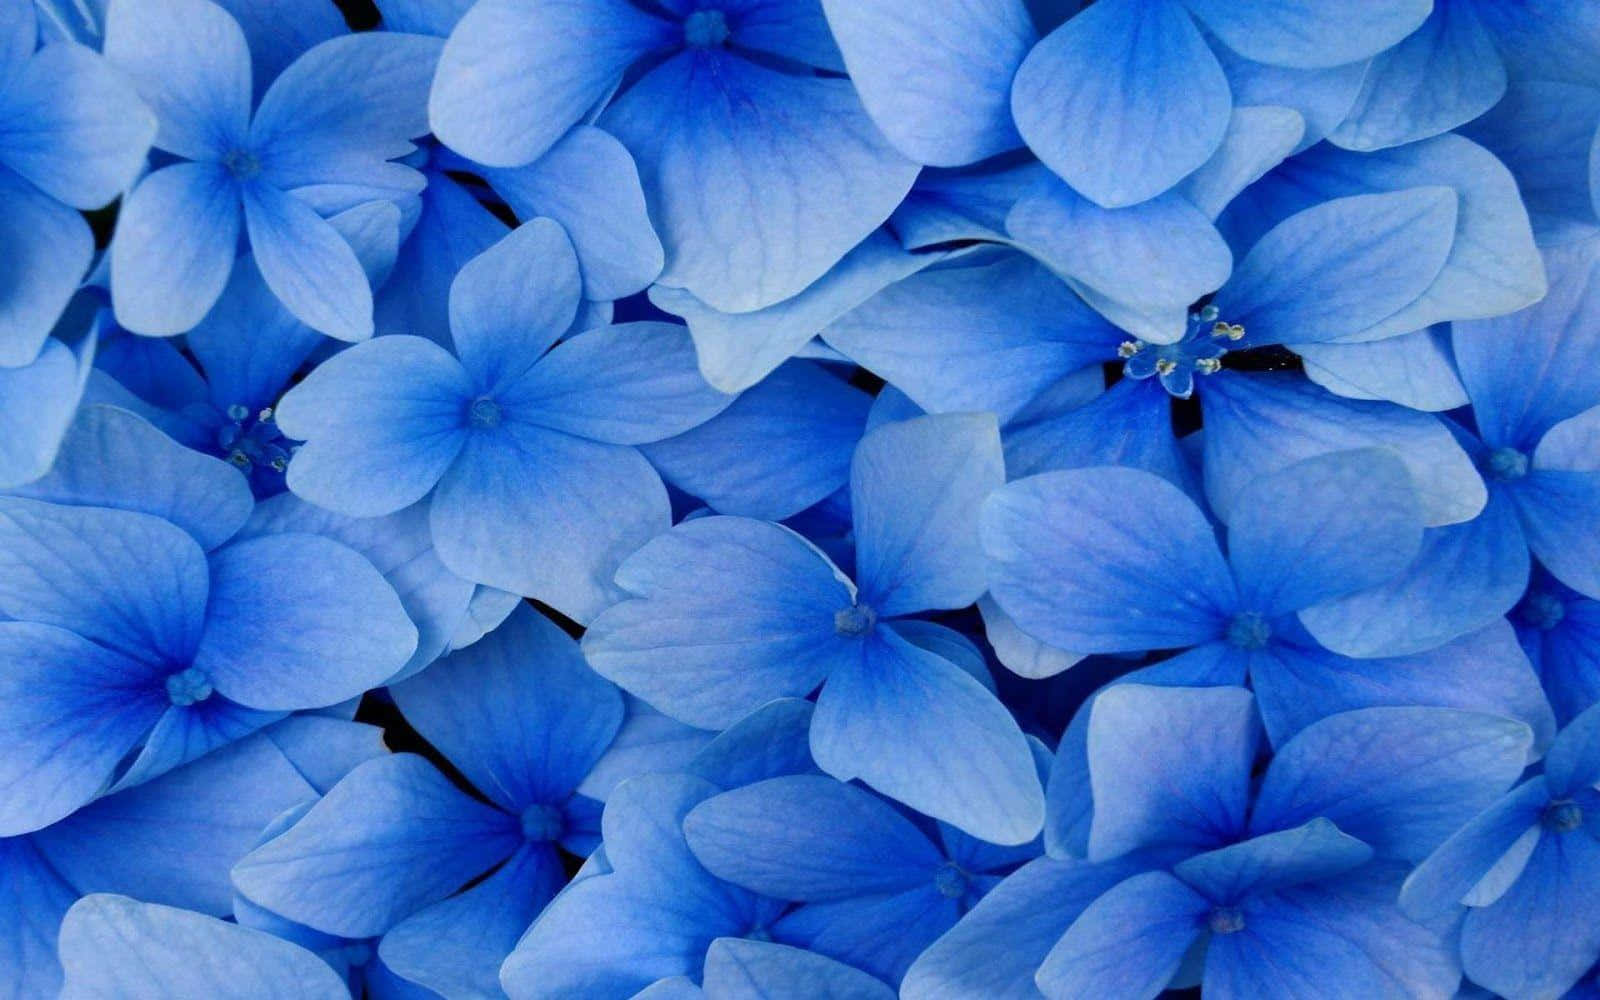 Hintergrundmit Blauen Hortensien-blumenansichten Von Oben.